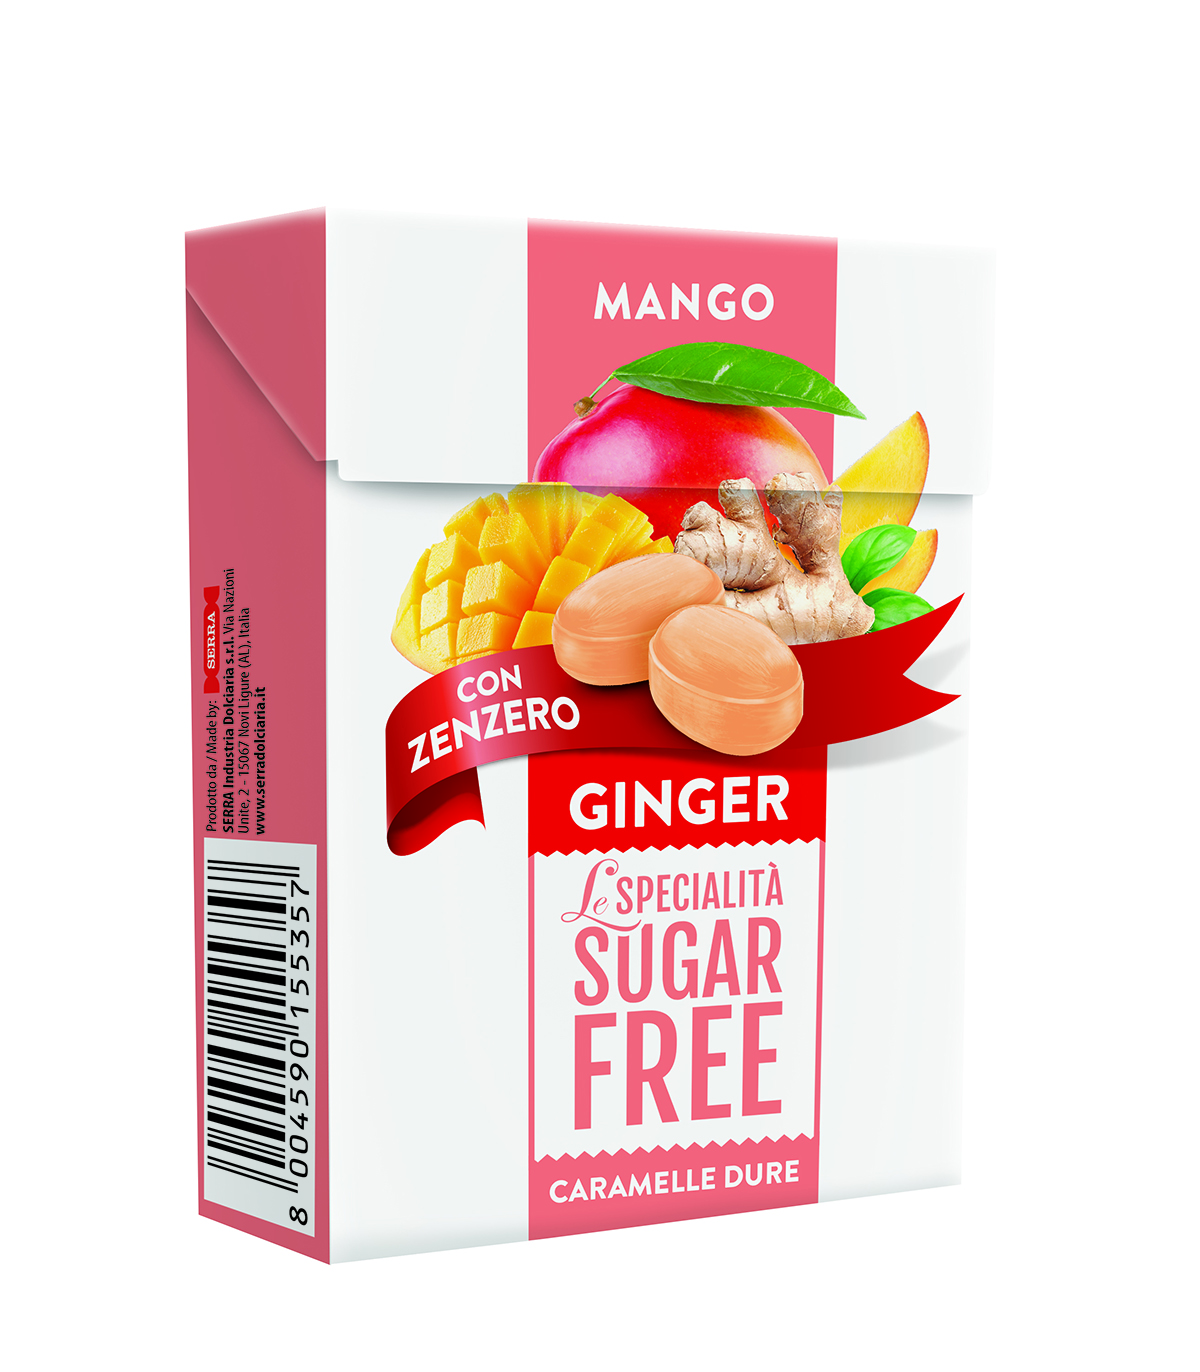 Sugarfree candies Mango and Ginger